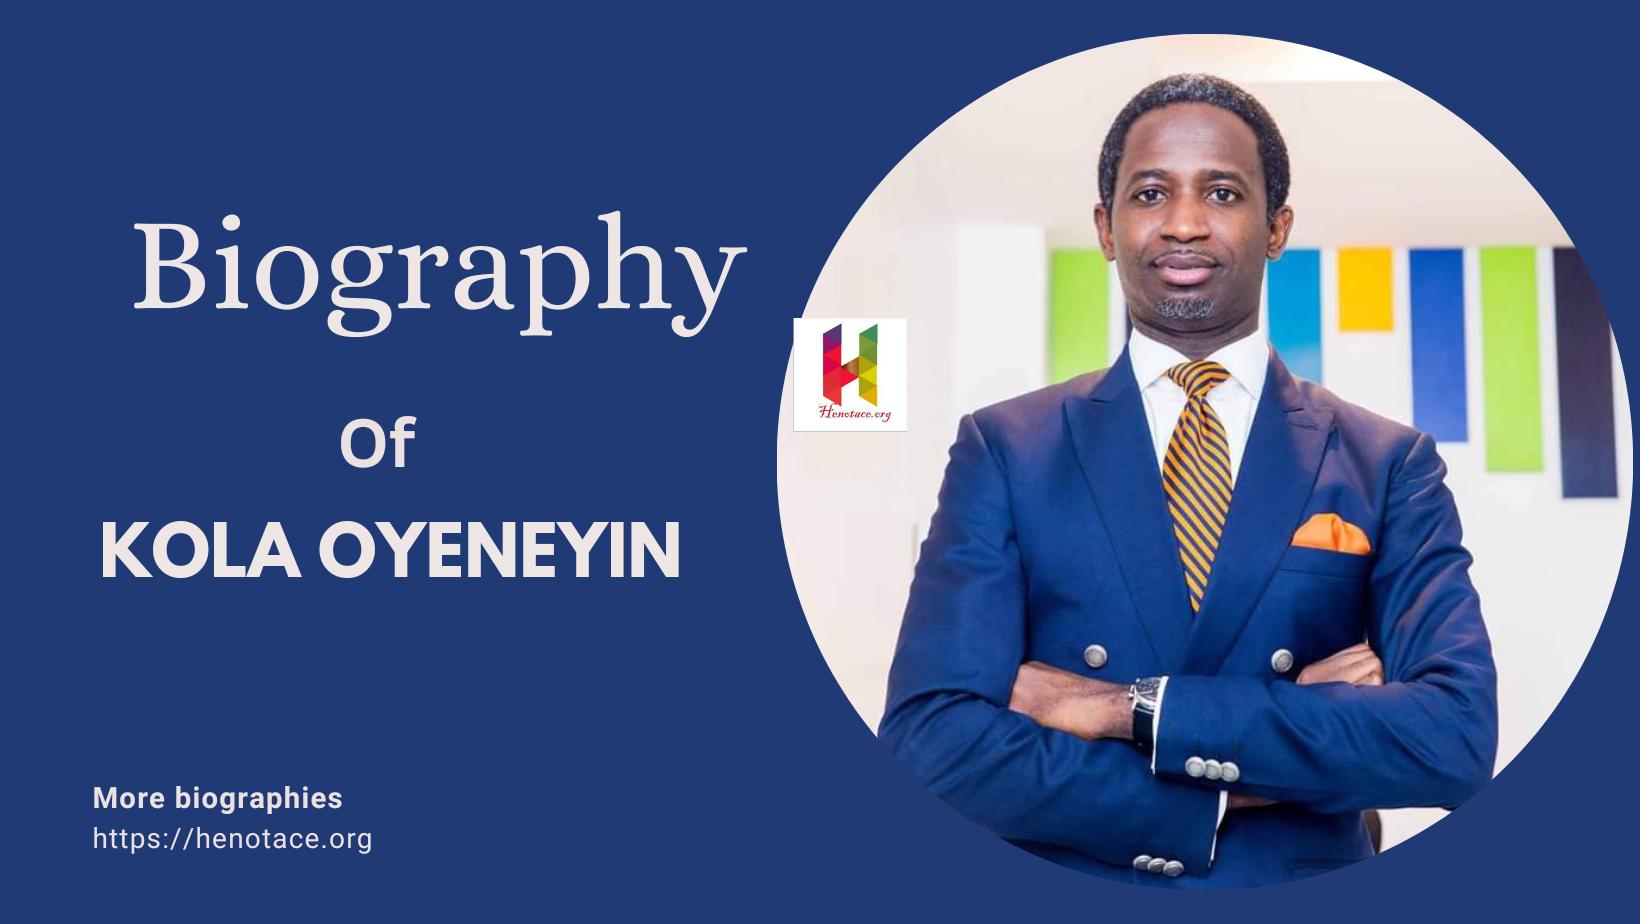 Biography of Kola Oyeneyin